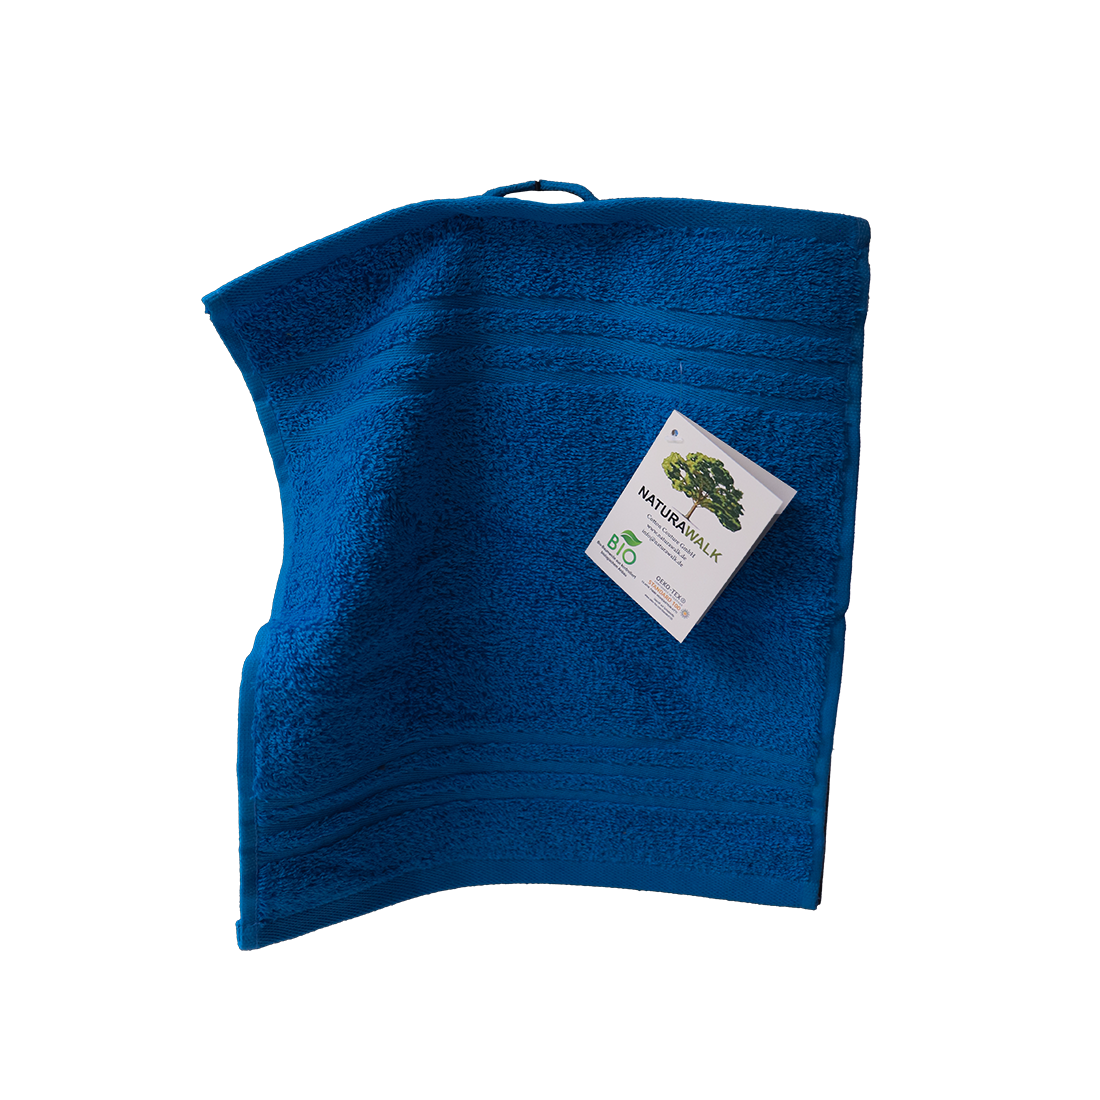 Bio Baumwoll Seiftuch, Größe 30 mal 30 cm in der Farbe Royal (kräftiges dunkles Blau)